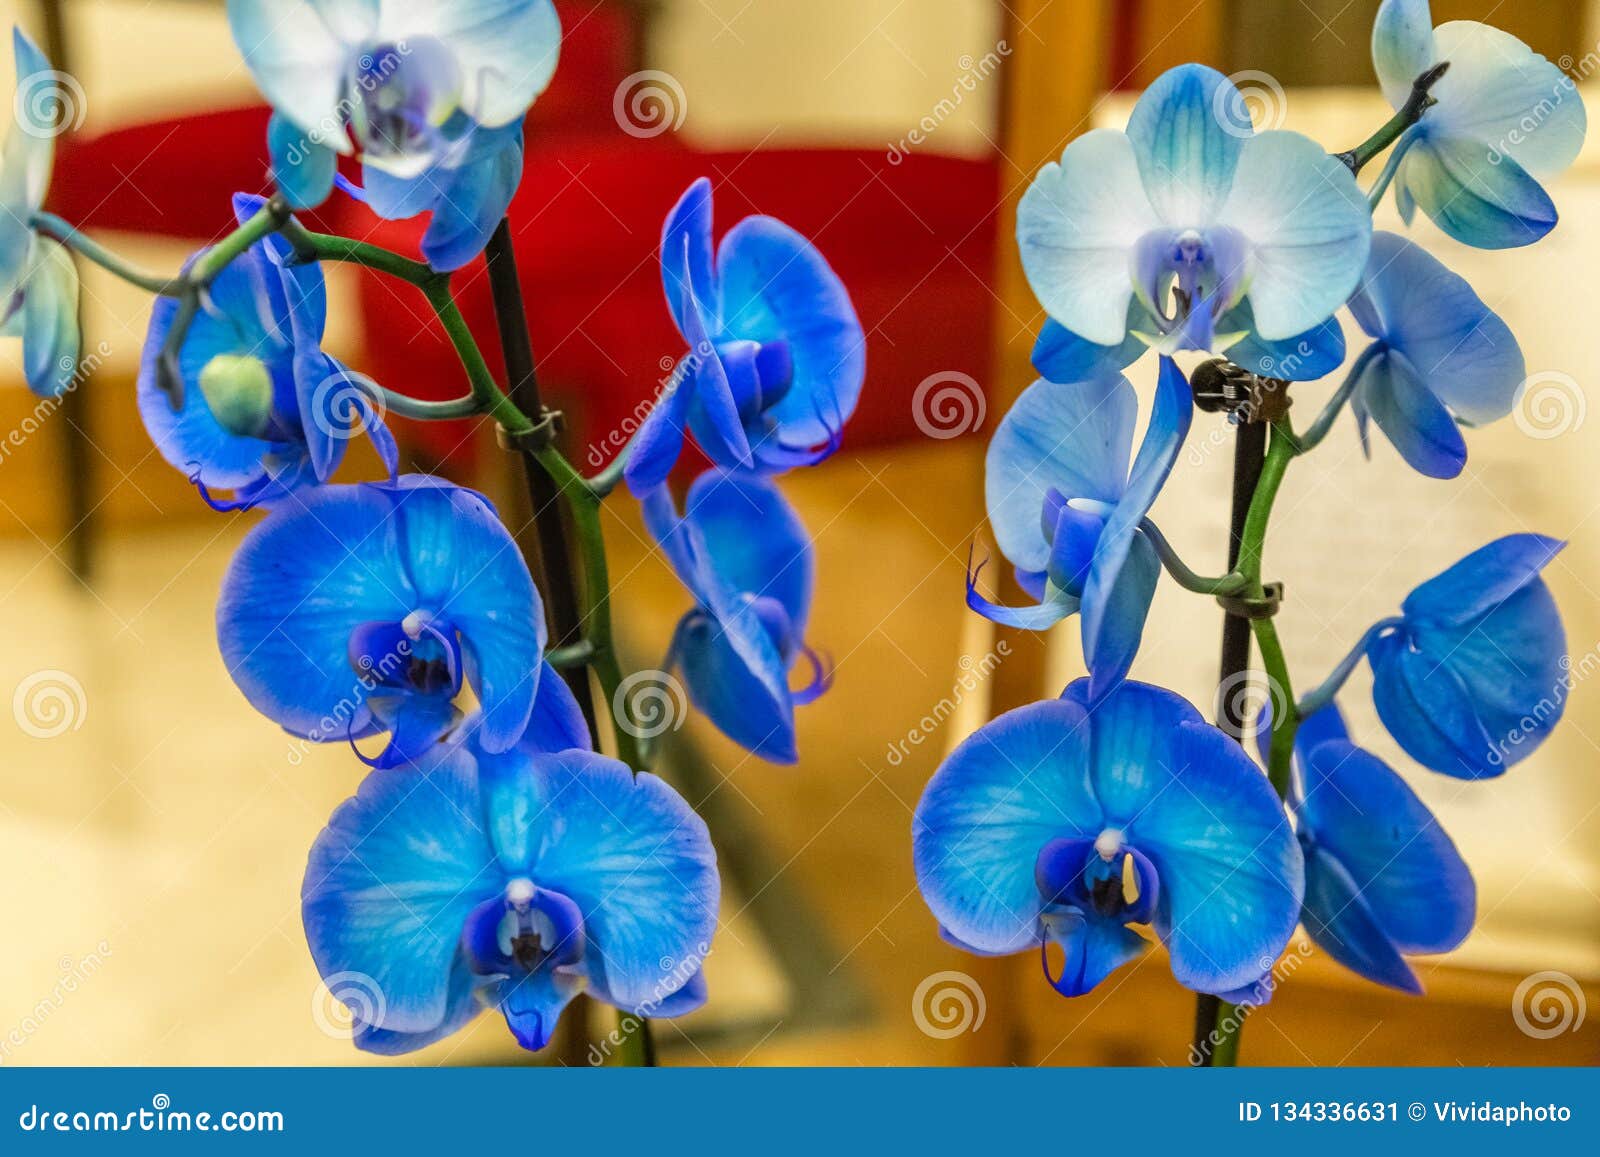 Orquídeas azules imagen de archivo. Imagen de decorativo - 134336631